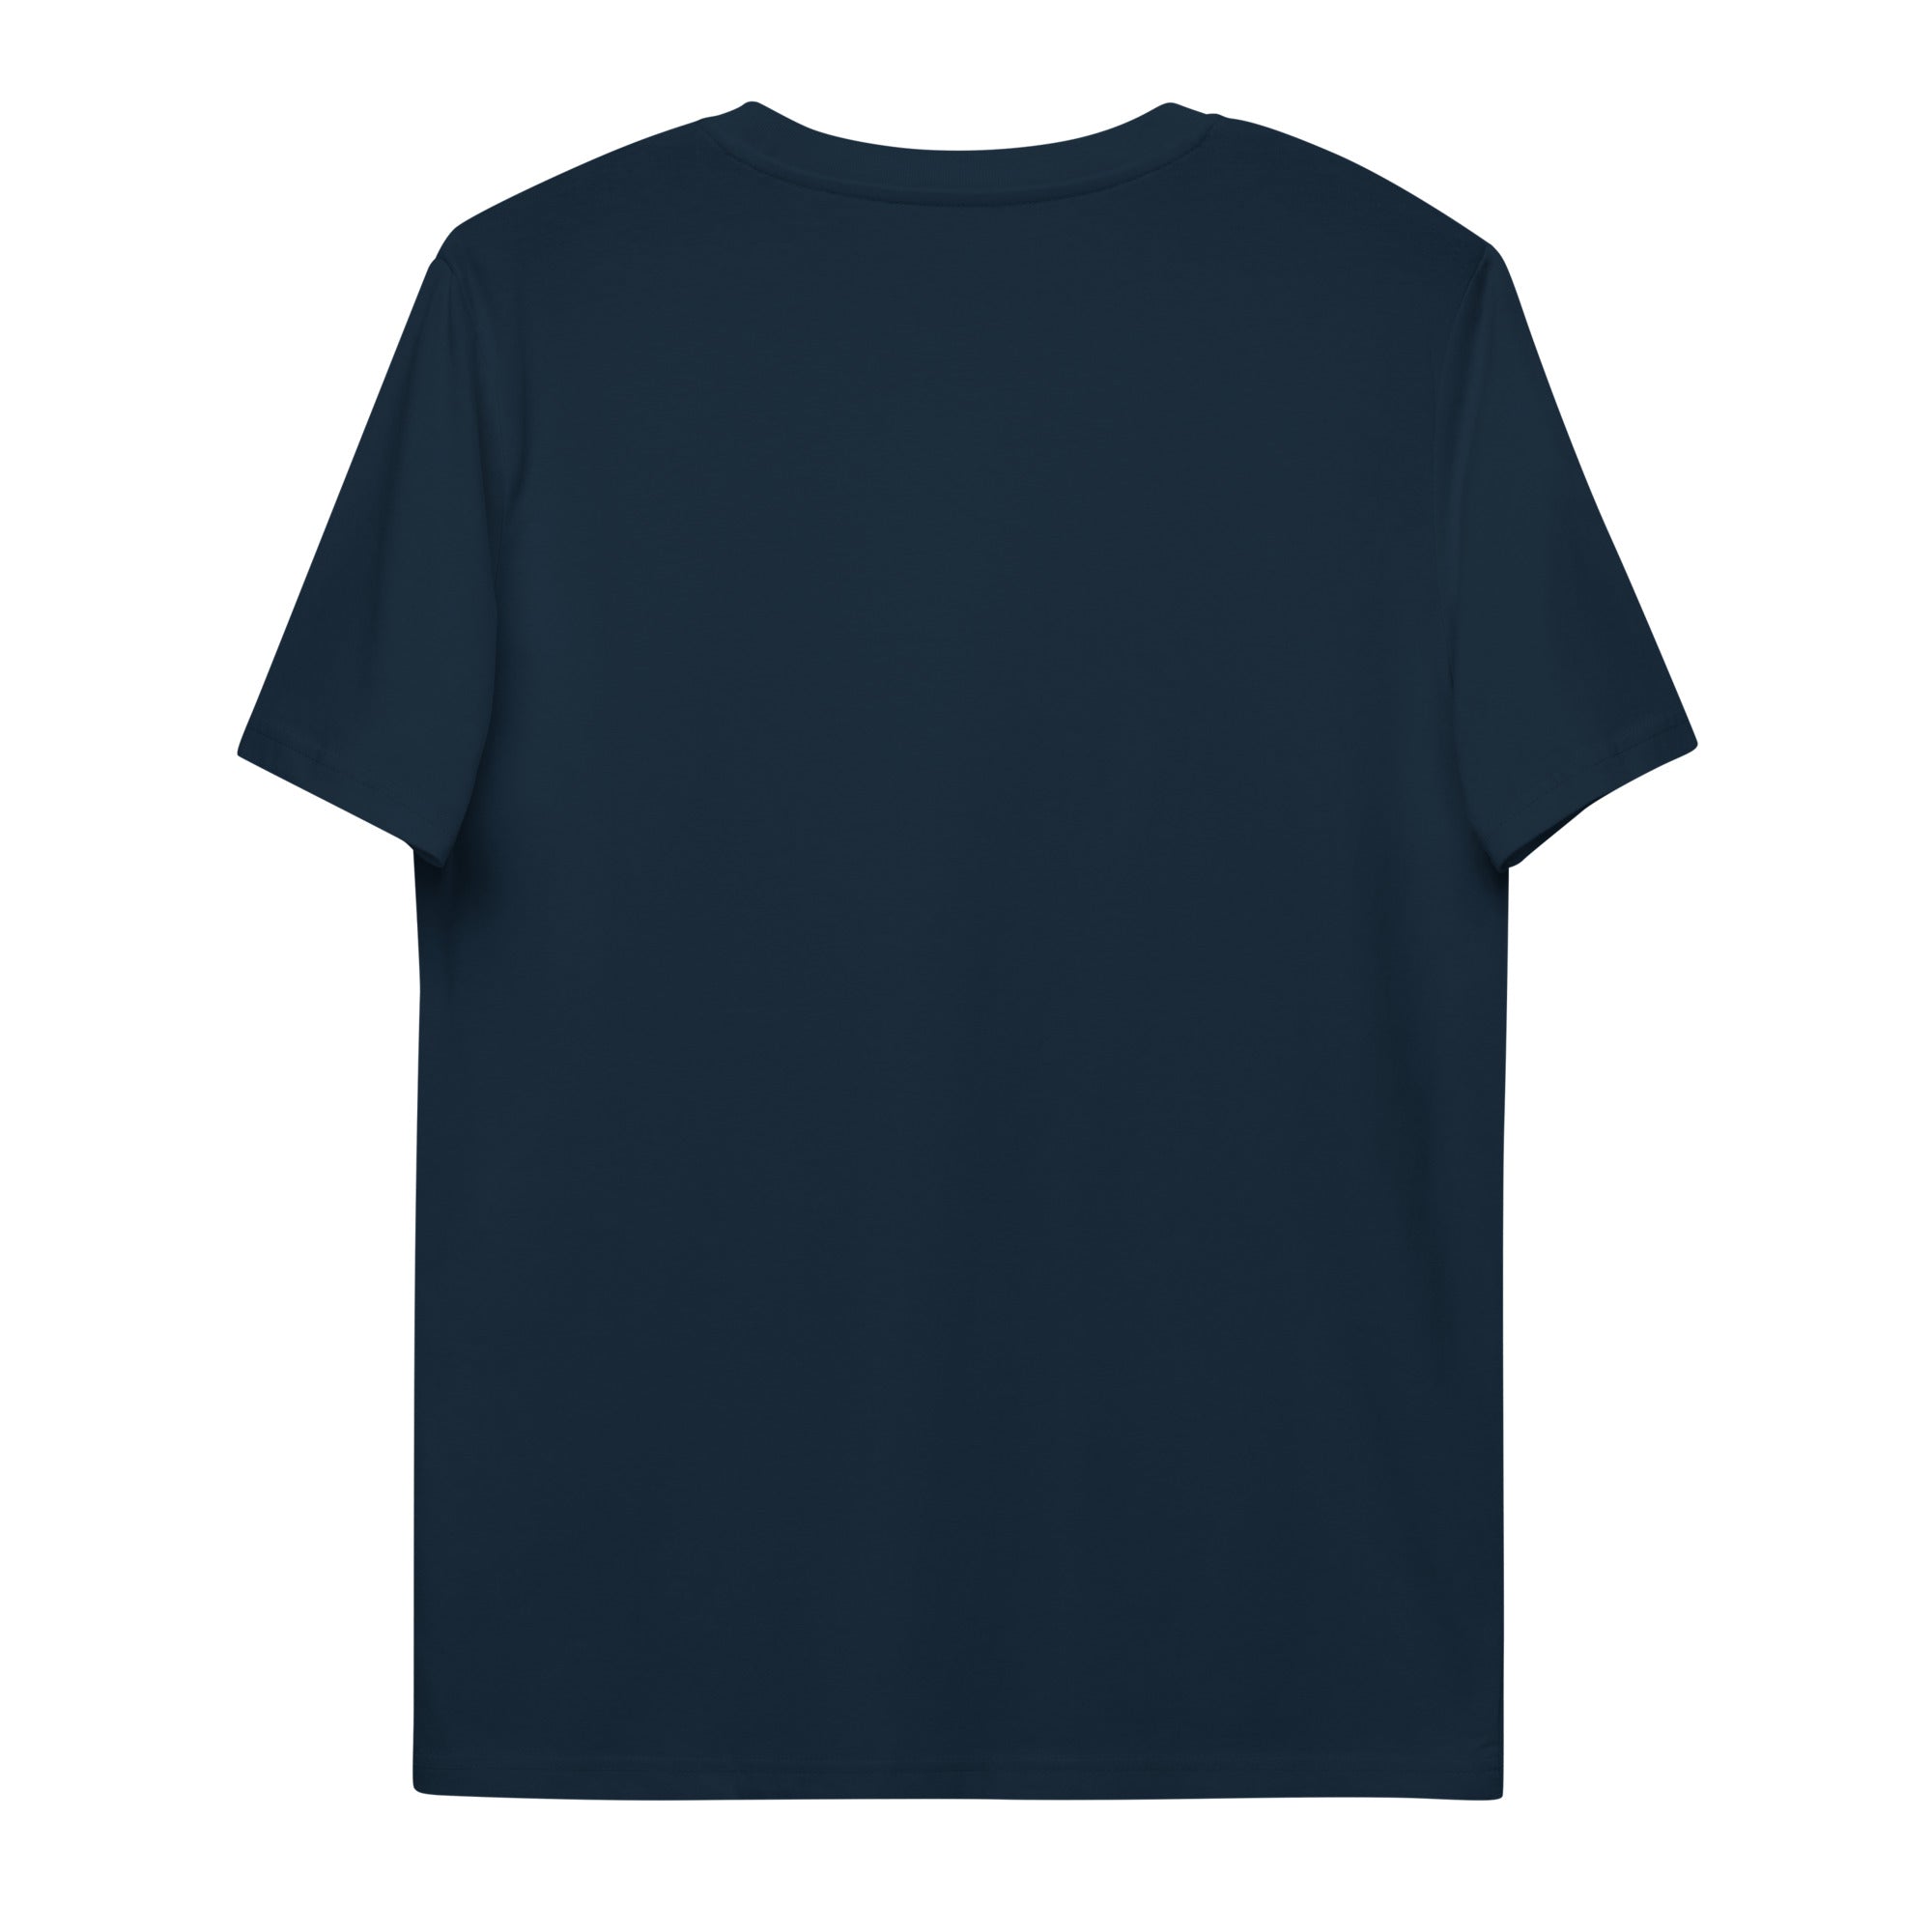 Aus-Liebe-zum-Meer-organic-cotton-t-shirt